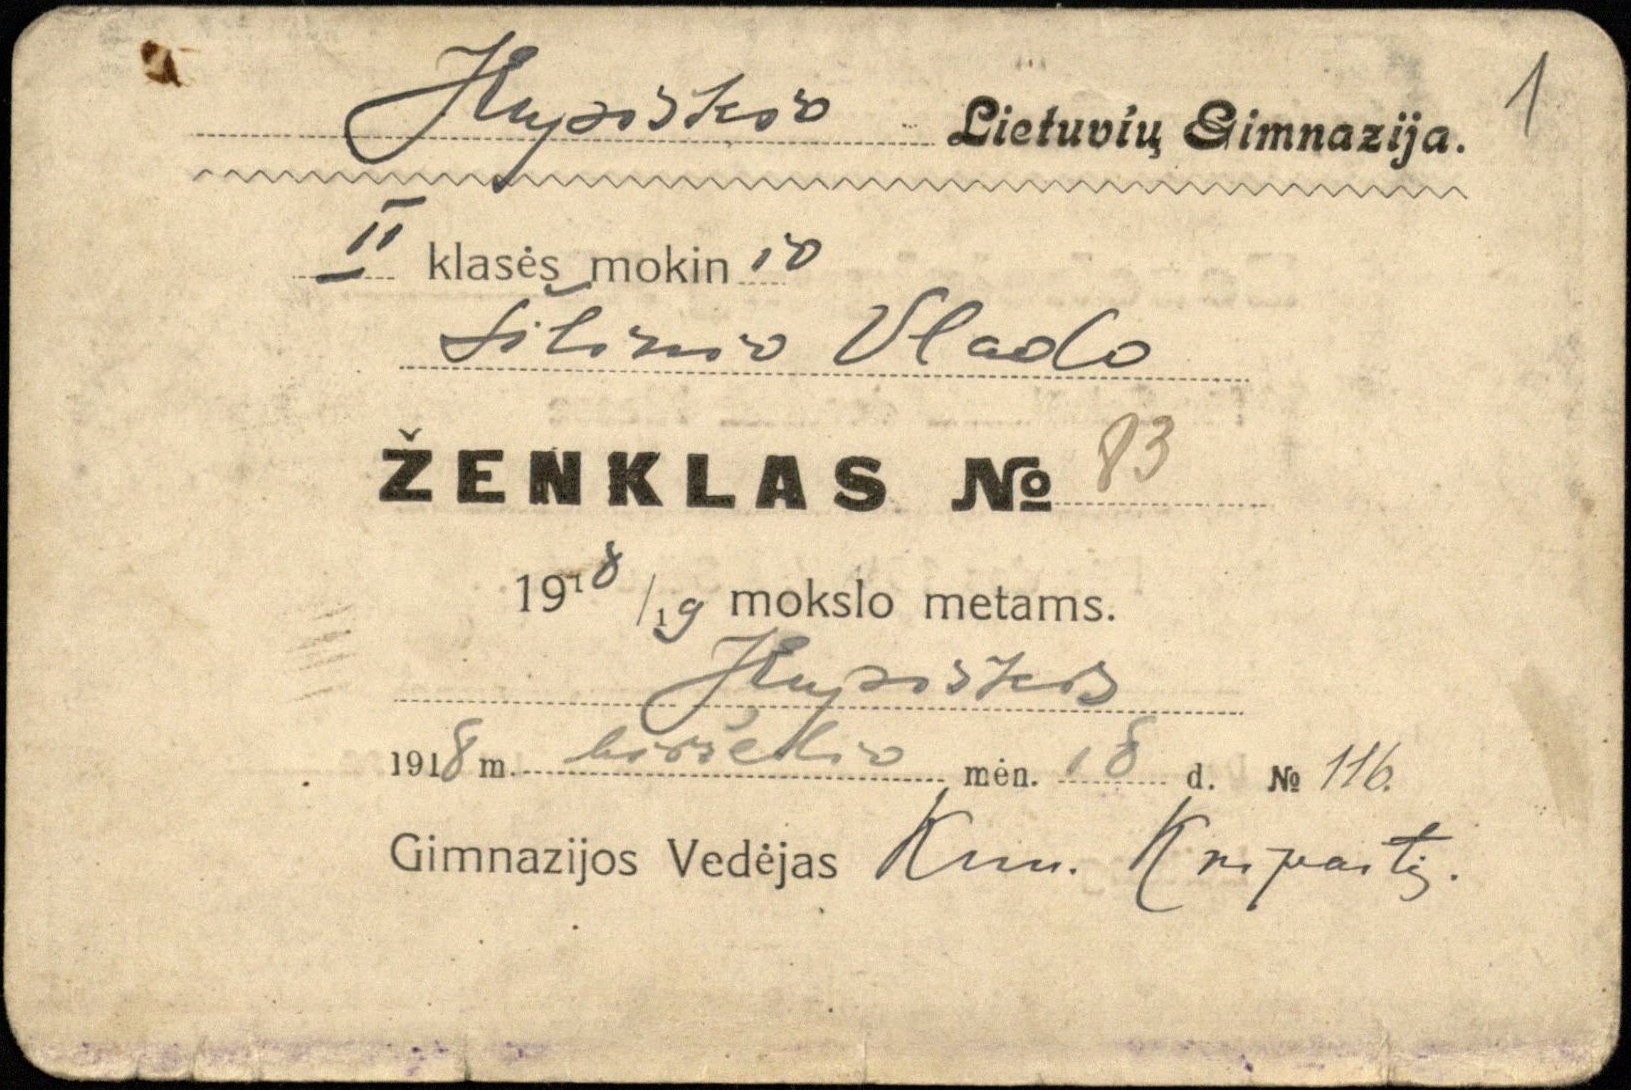 Kupiškio lietuvių gimnazijos II klasės mokinio Vlado Šilinio pažymėjimas, kurį išdavė gimnazijos vedėjas kunigas Antanas Kripaitis. 1918 06 18